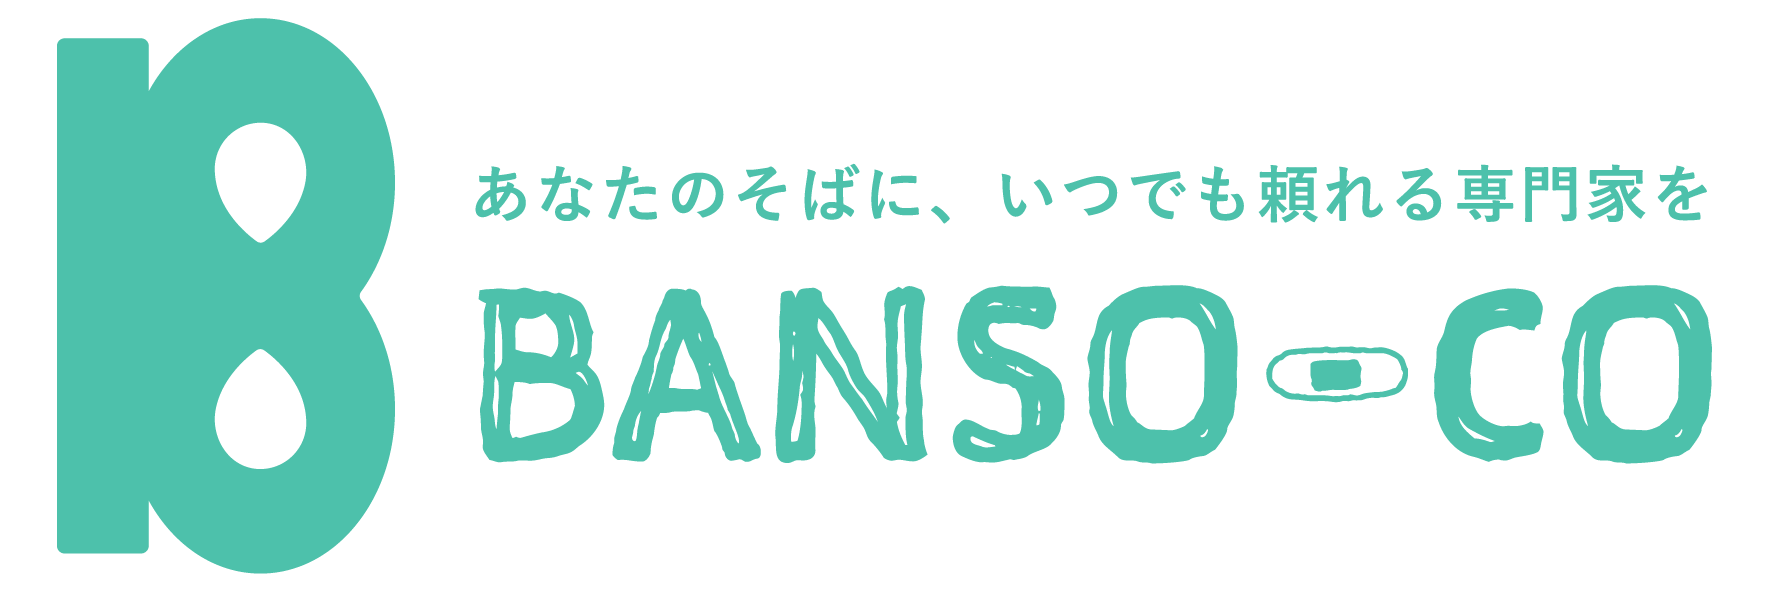 サポーター企業BANSO-CO